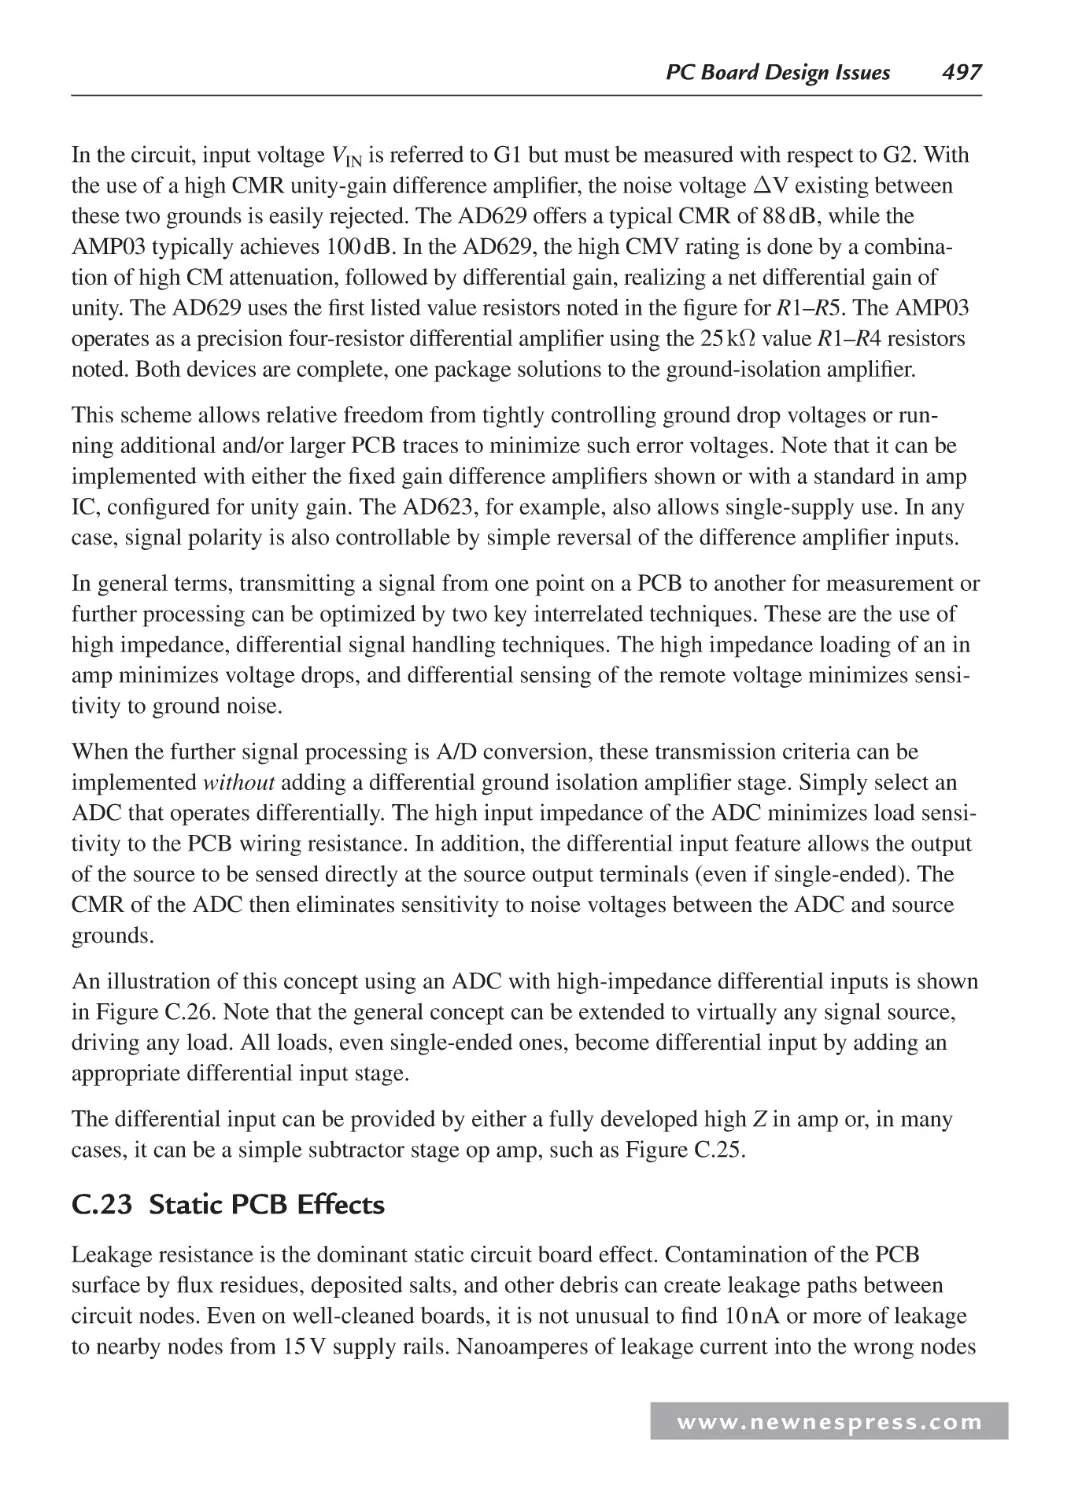 C.23 Static PCB Effects